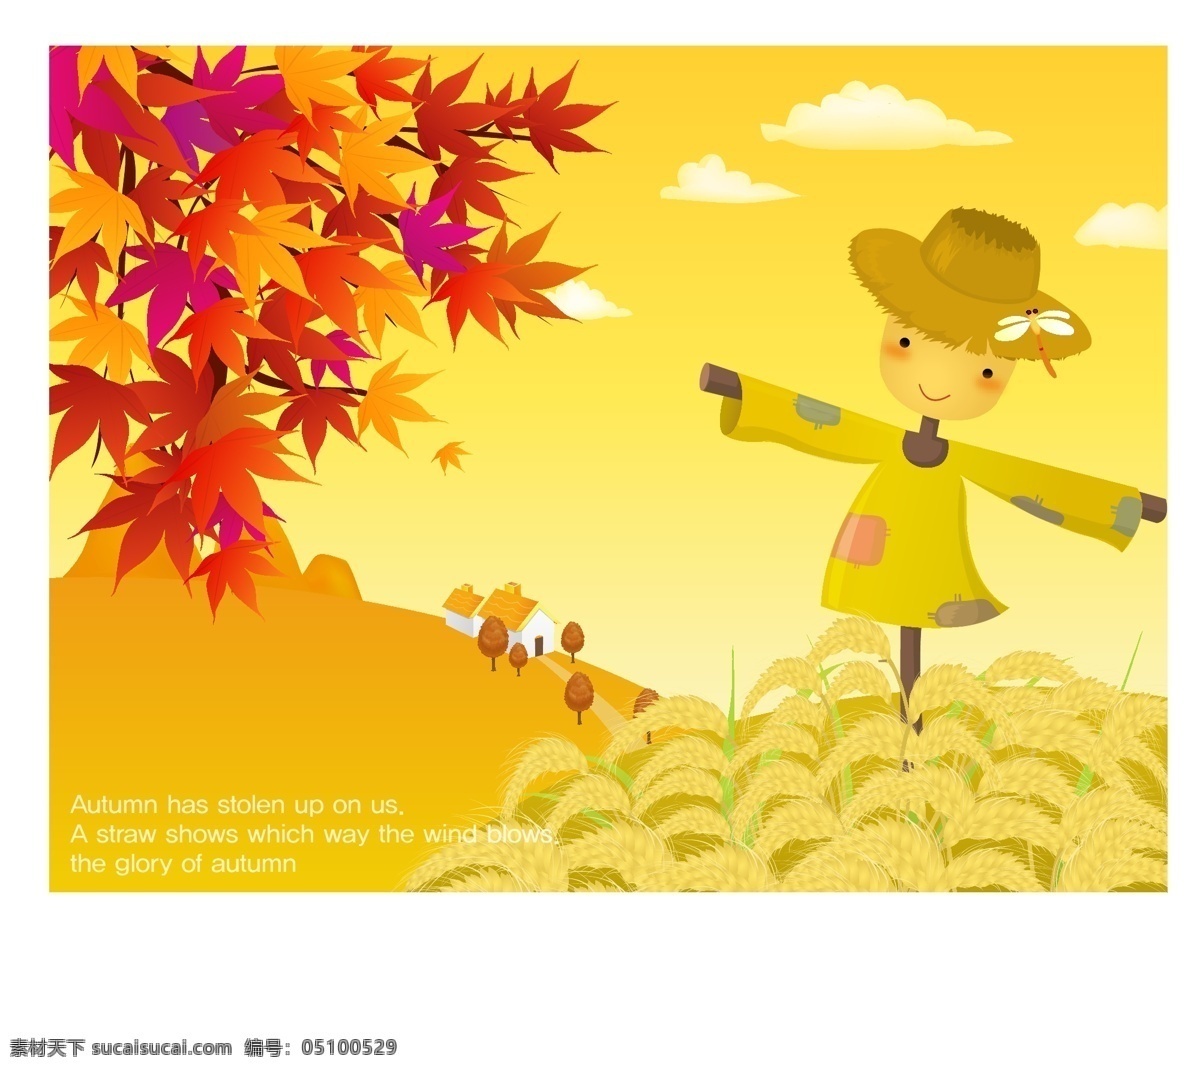 韩国自然风景 秋天风景素材 矢量 格式 ai格式 设计素材 自然风光 风景建筑 矢量图库 黄色